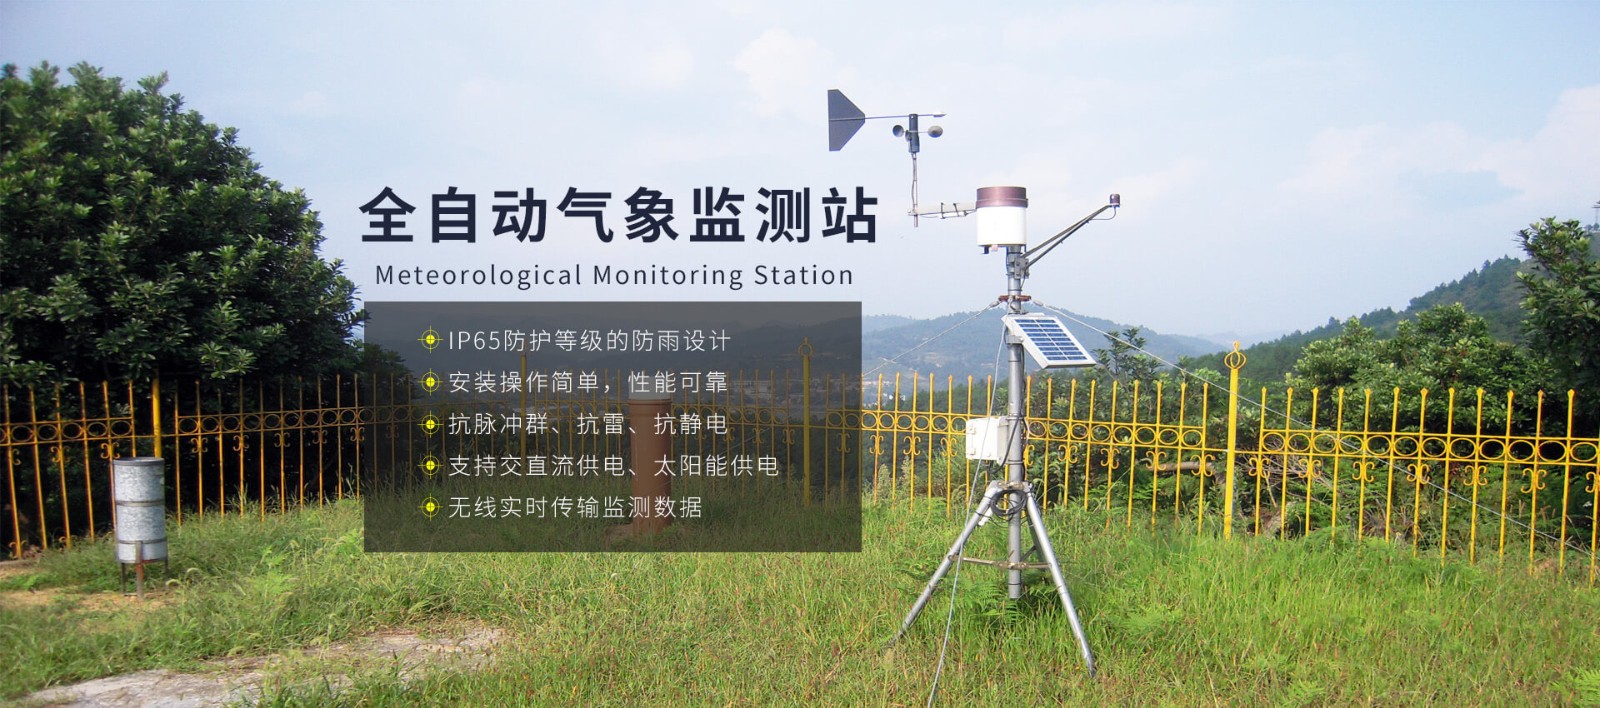 农田气象监测系统-自动气象站-小型气象站-农田气象站物联网系统-七全七美